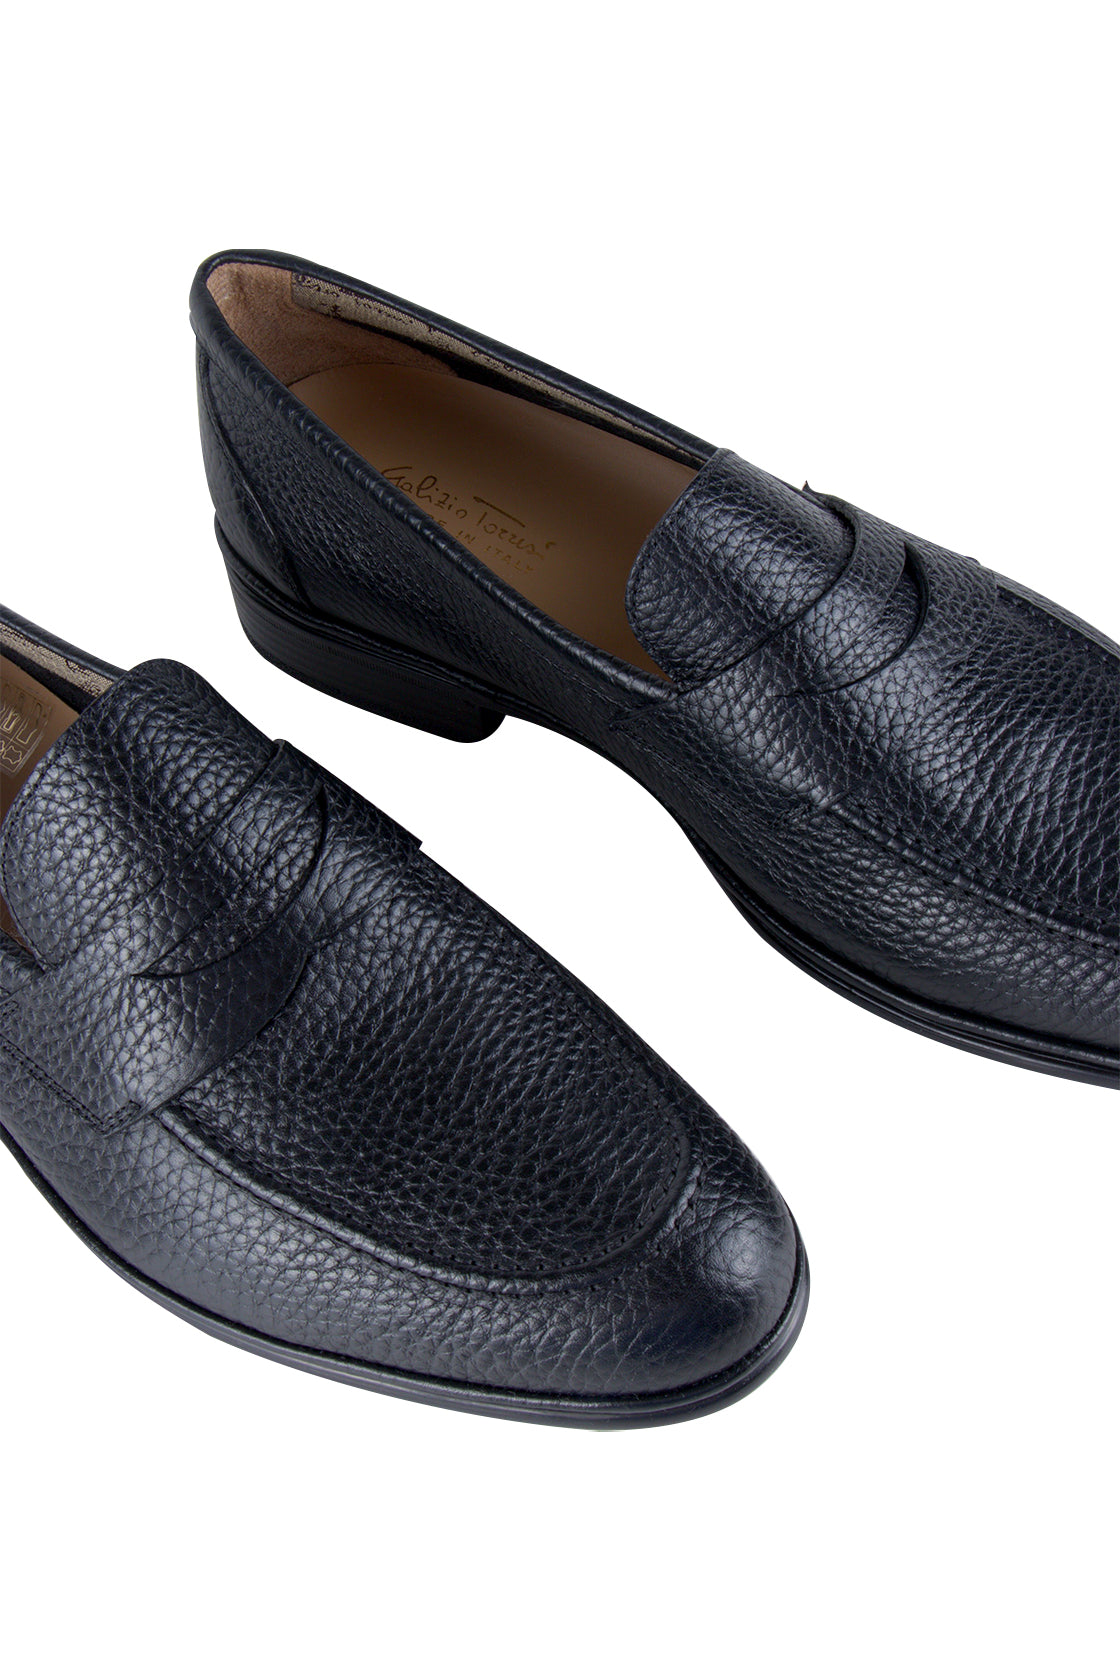 Galizio Torresi Slip On Shoe Pebbled Black